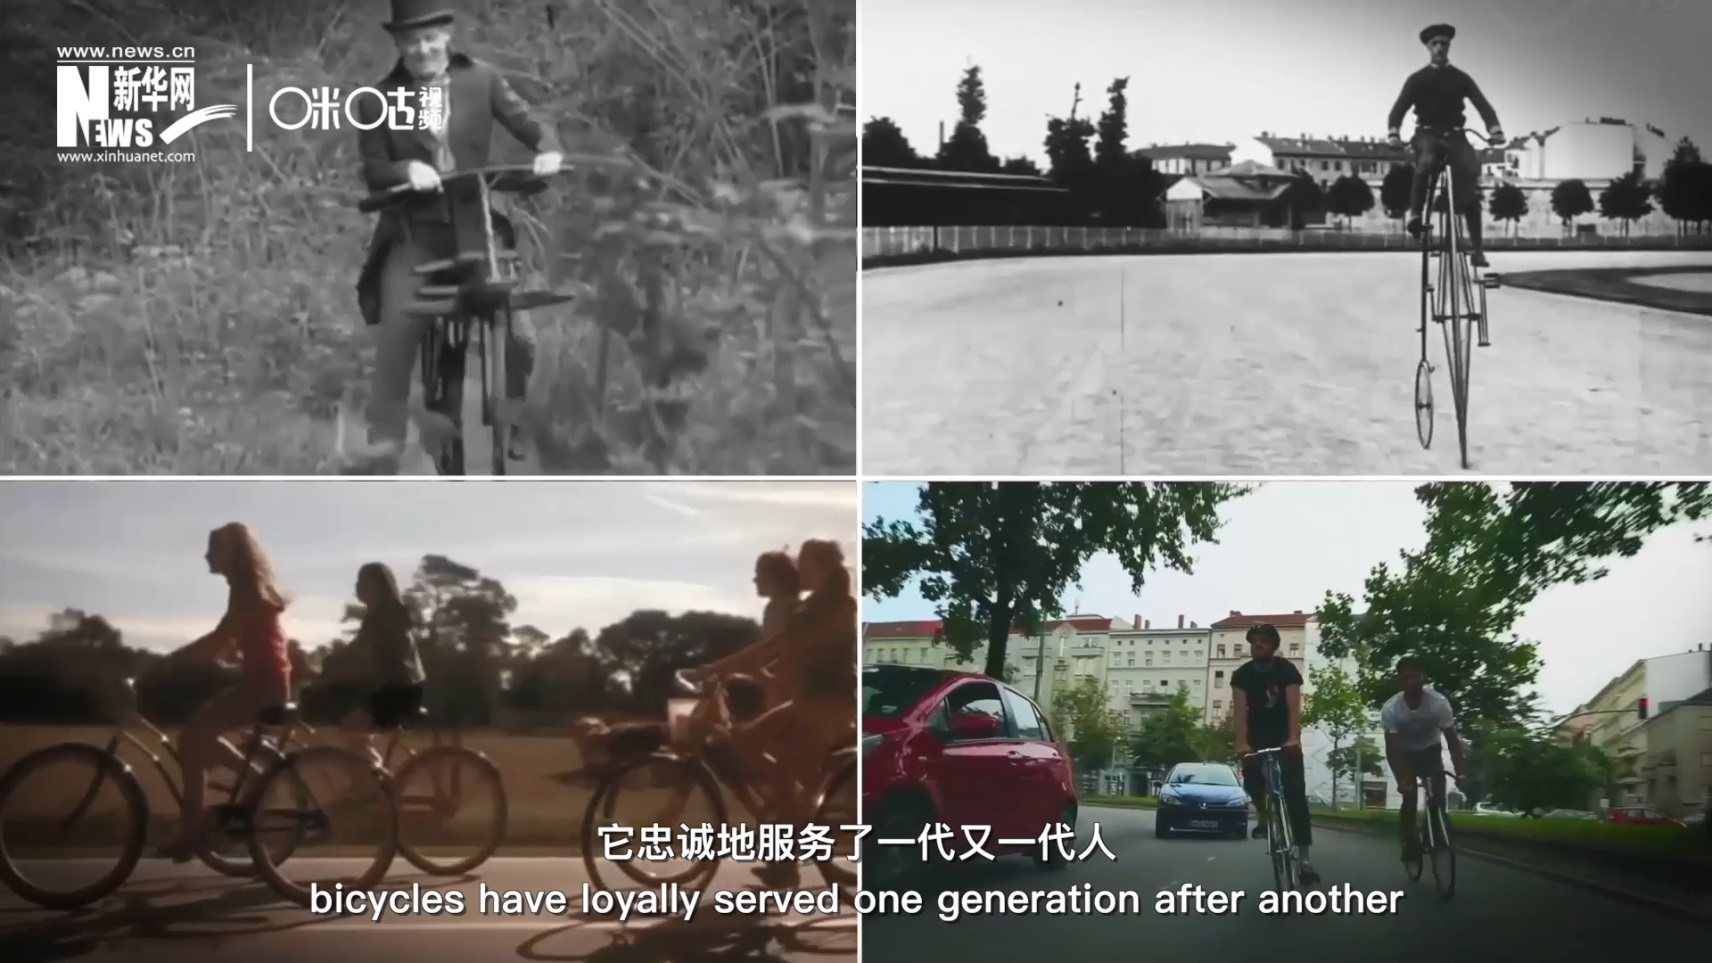 自行车忠诚地服务了一代又一代人